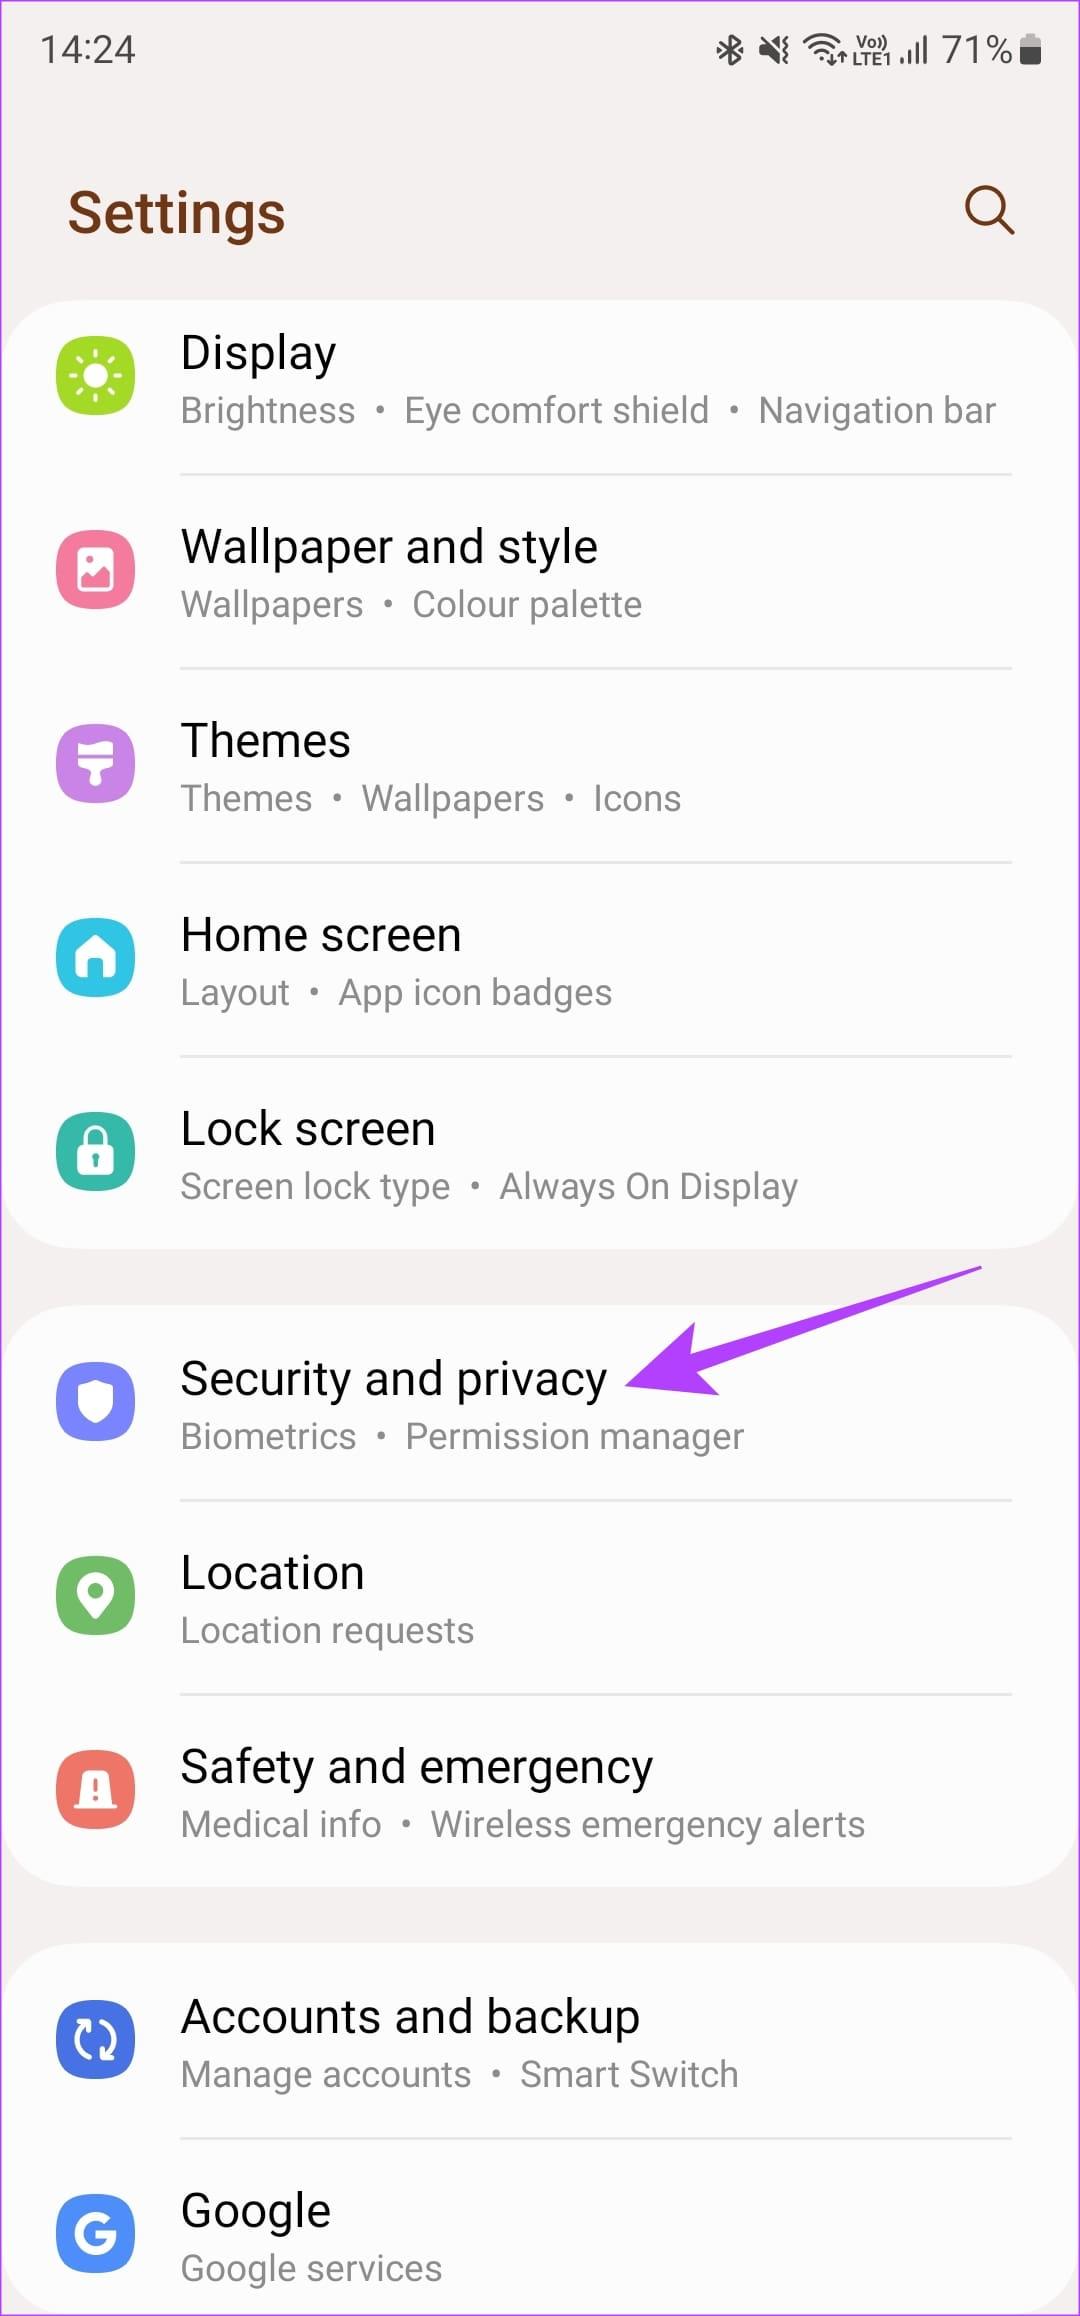 6 beste manieren om dit op te lossen Kan geen screenshot maken vanwege beveiligingsbeleid op Android